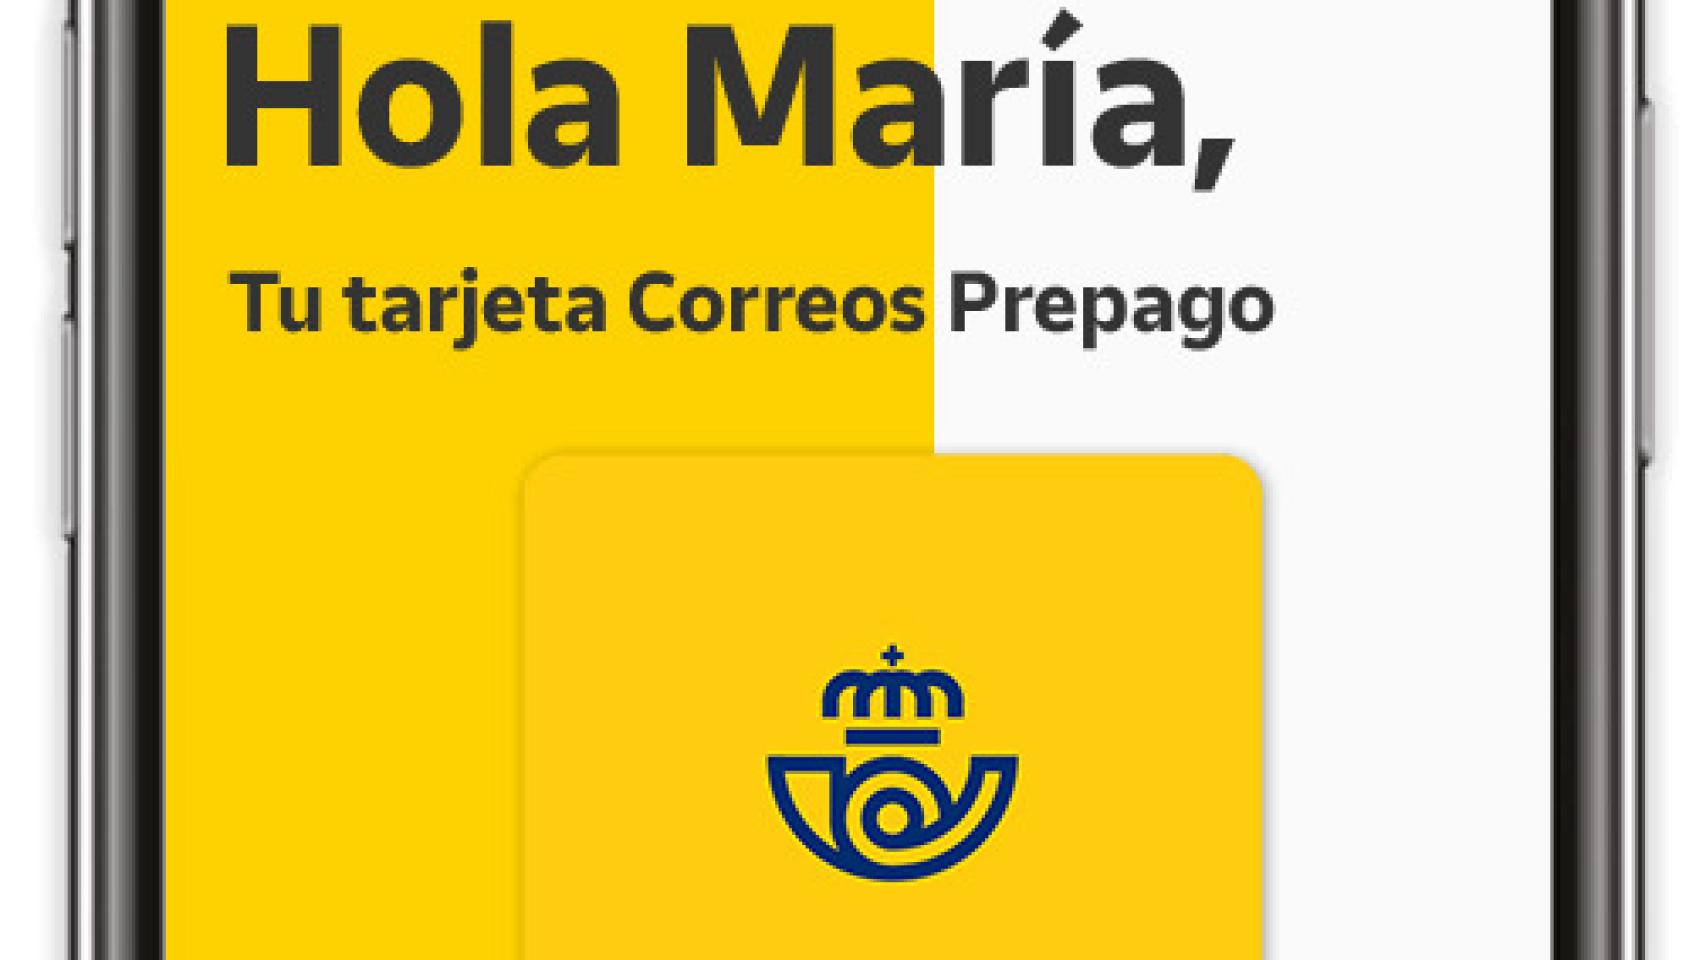 Tarjeta Correos Prepago Mastercard, la forma de impulsar la inclusión  financiera que se lleva en el bolsillo o en el móvil